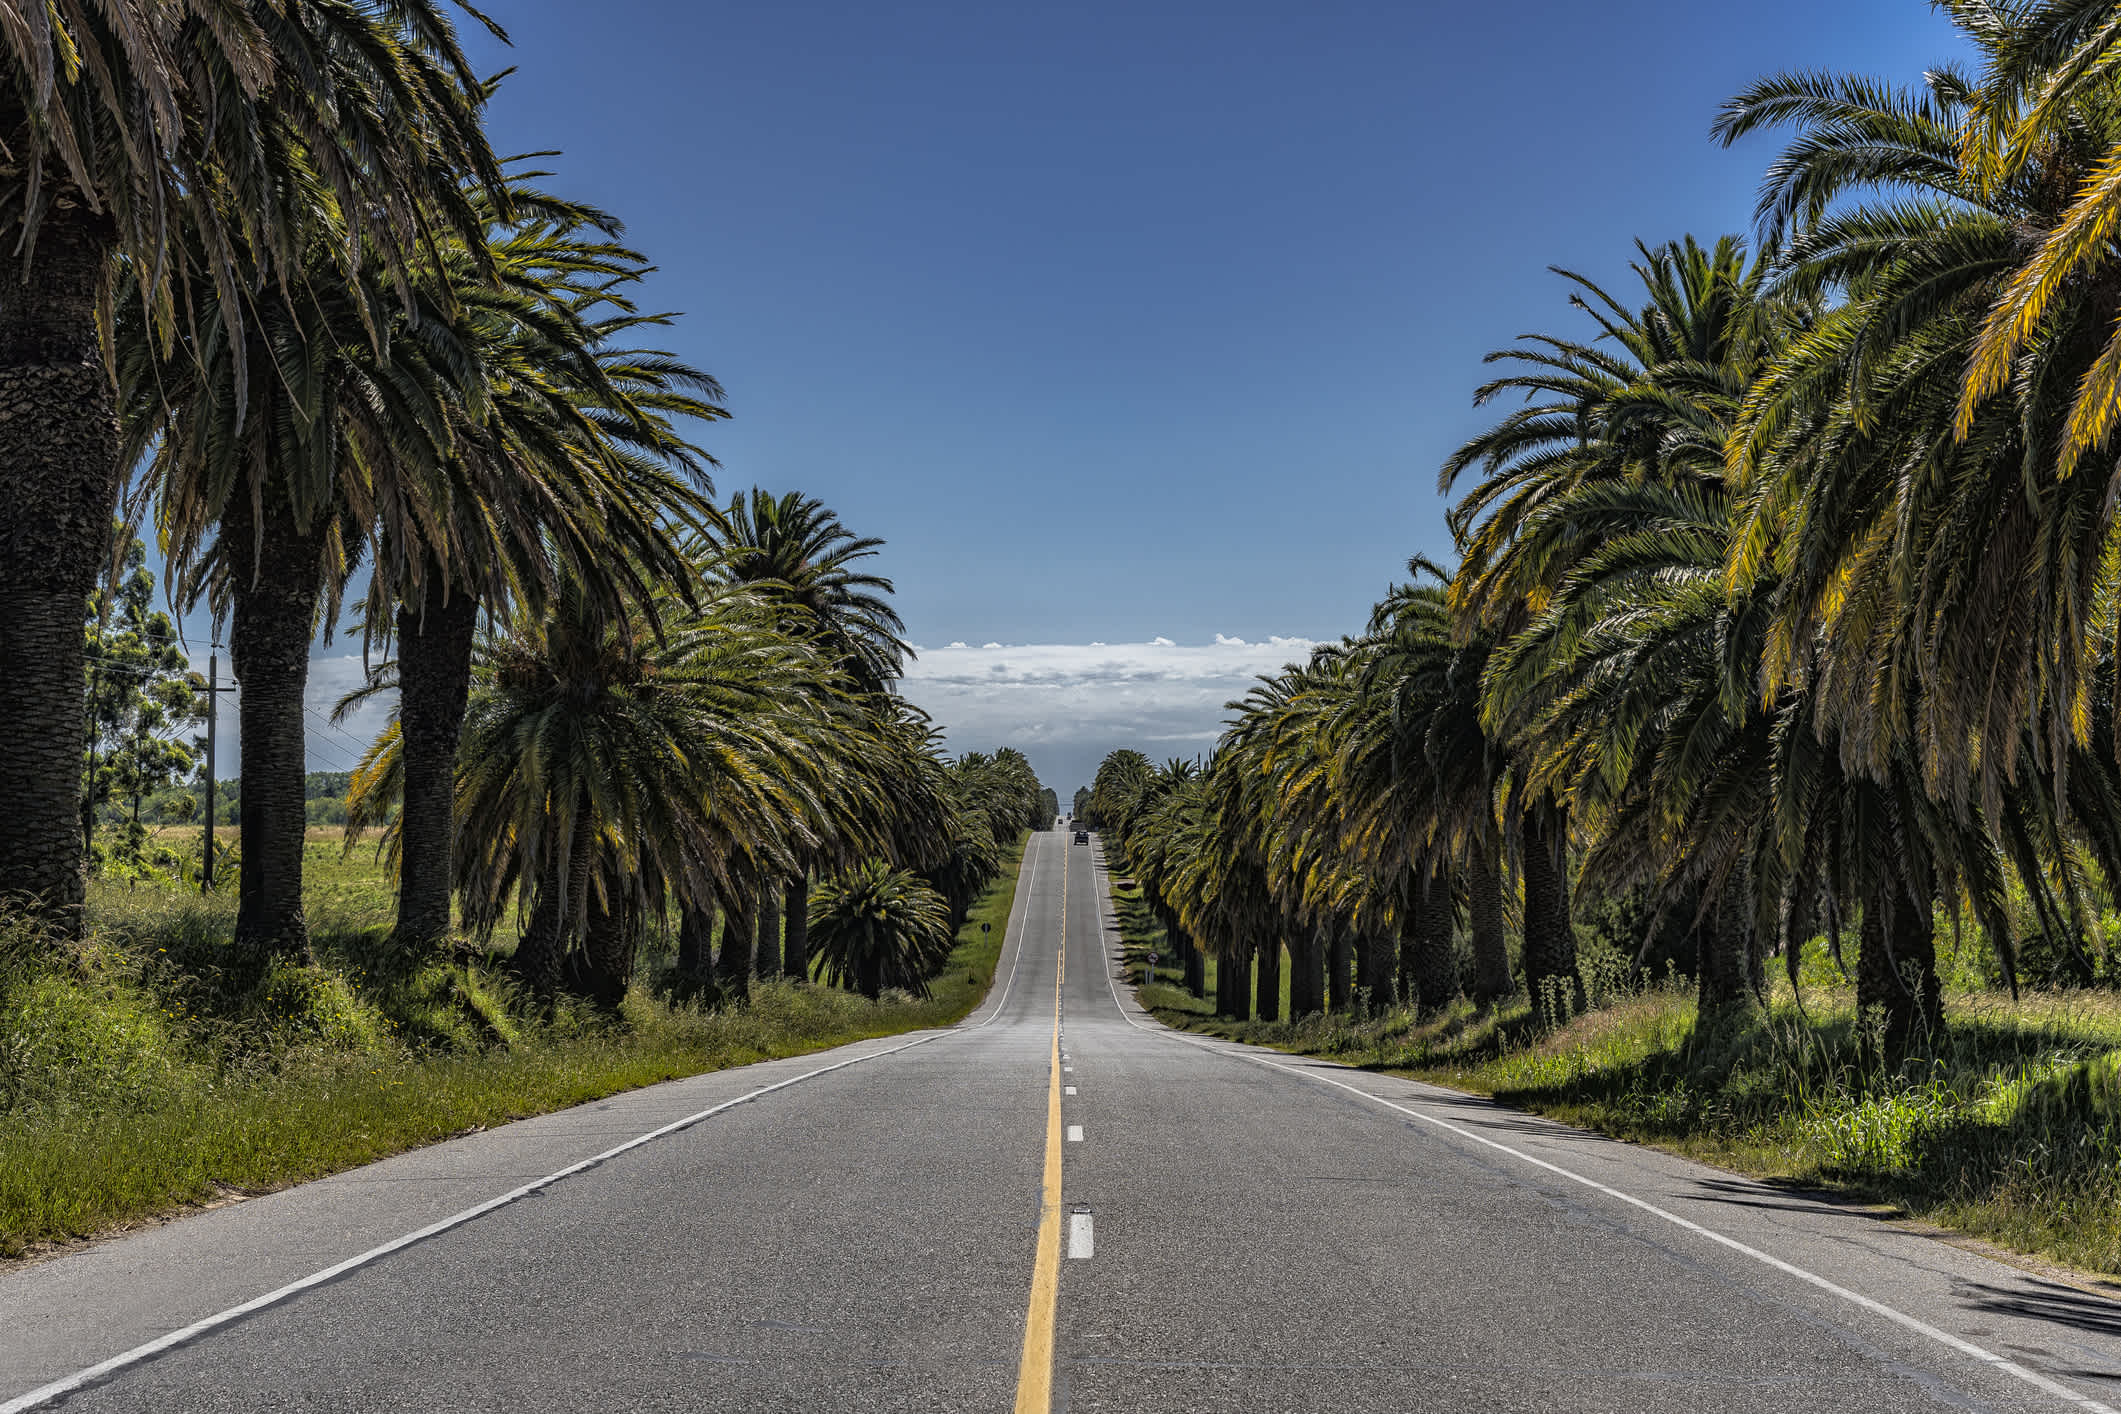 L'autoroute avec des palmiers en Uruguay

